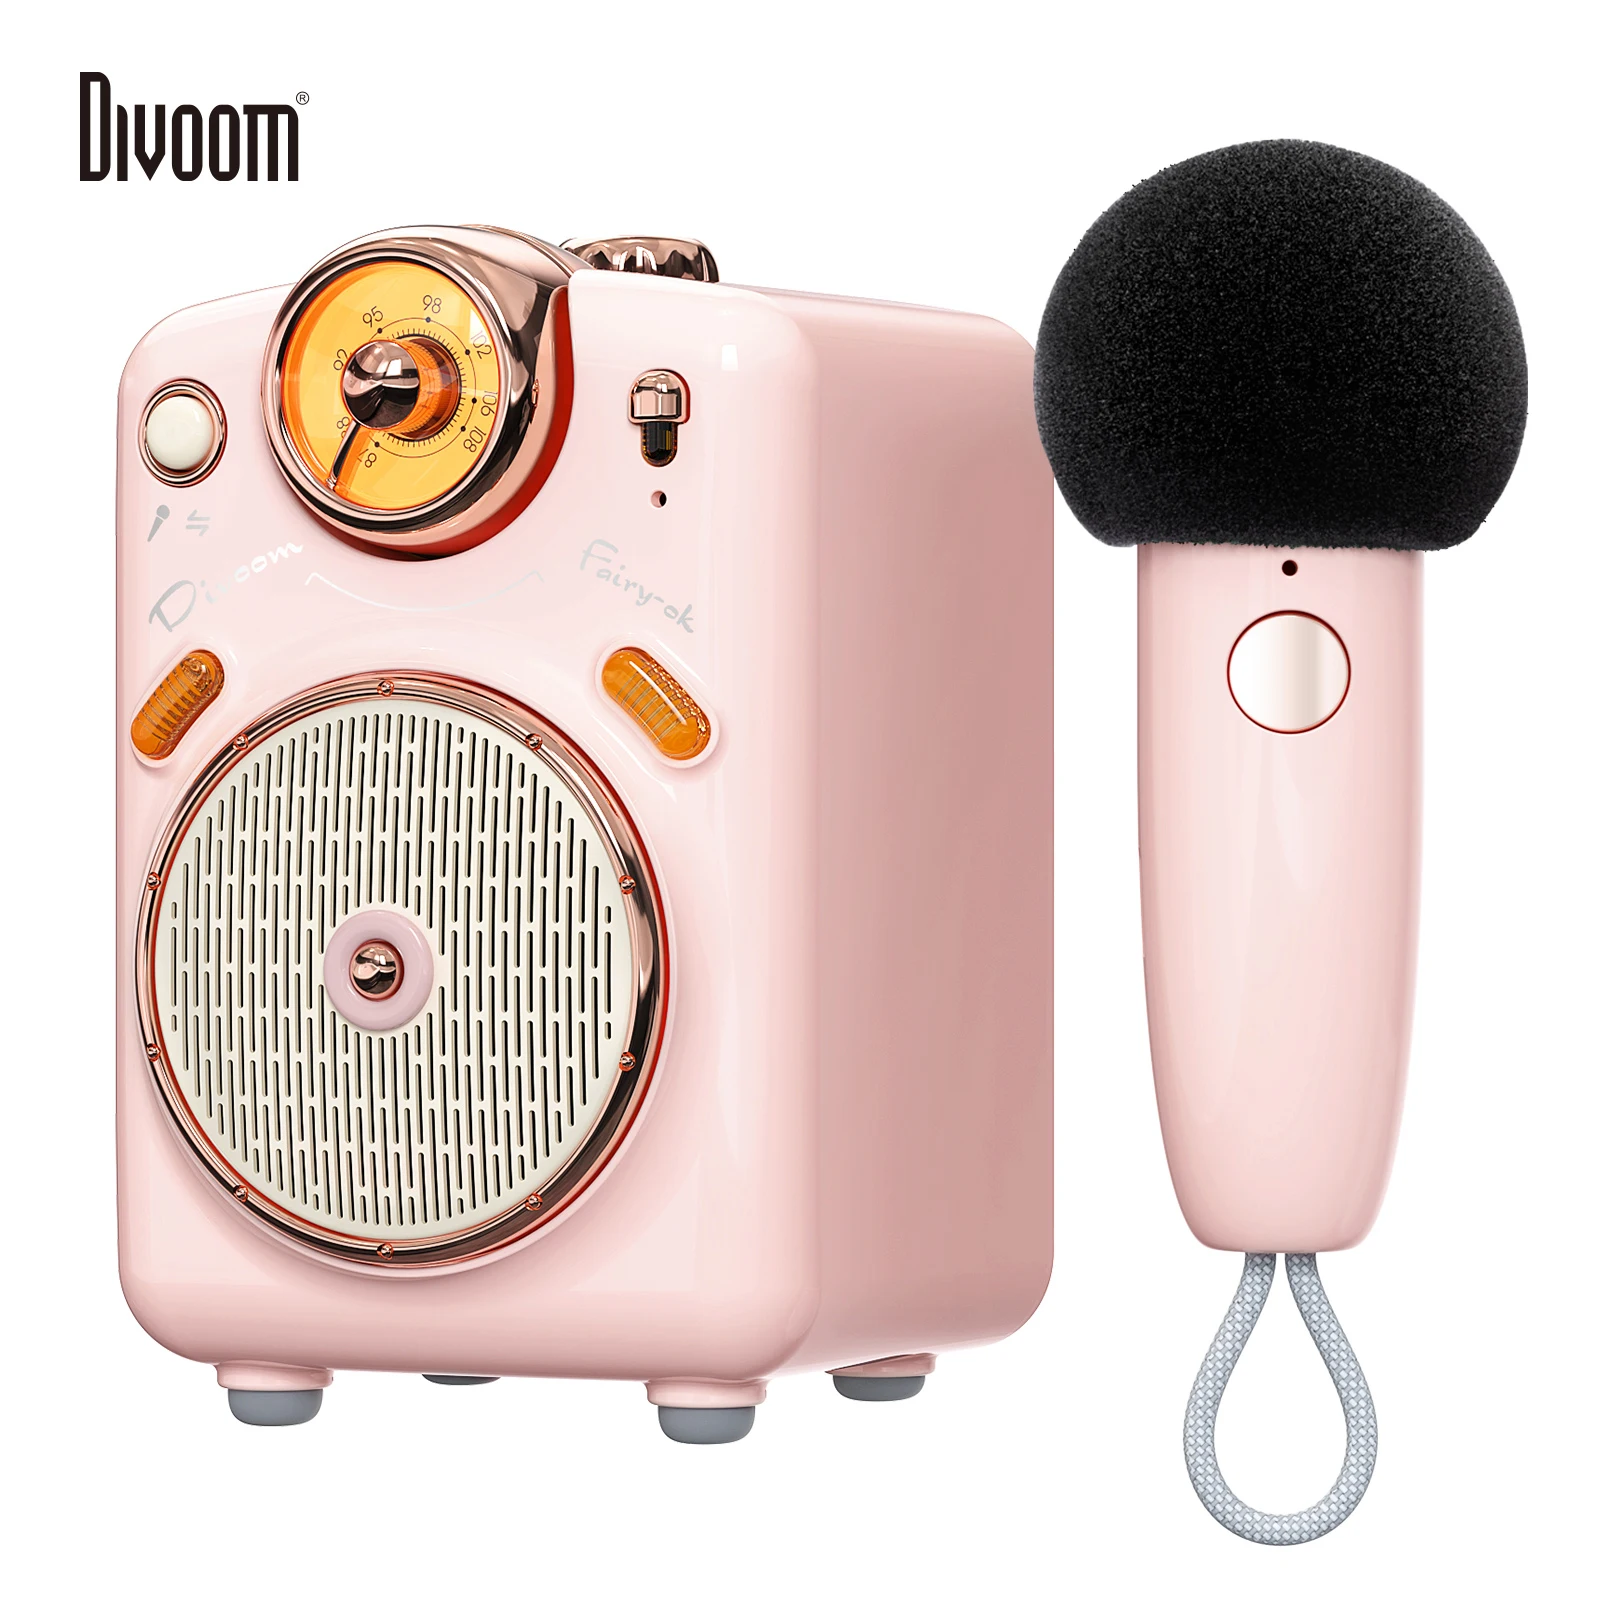 

Оригинальная портативная BT Колонка Divoom Fairy-OK с микрофоном, функцией караоке и голосовым изменением, FM-радио, TF-картой